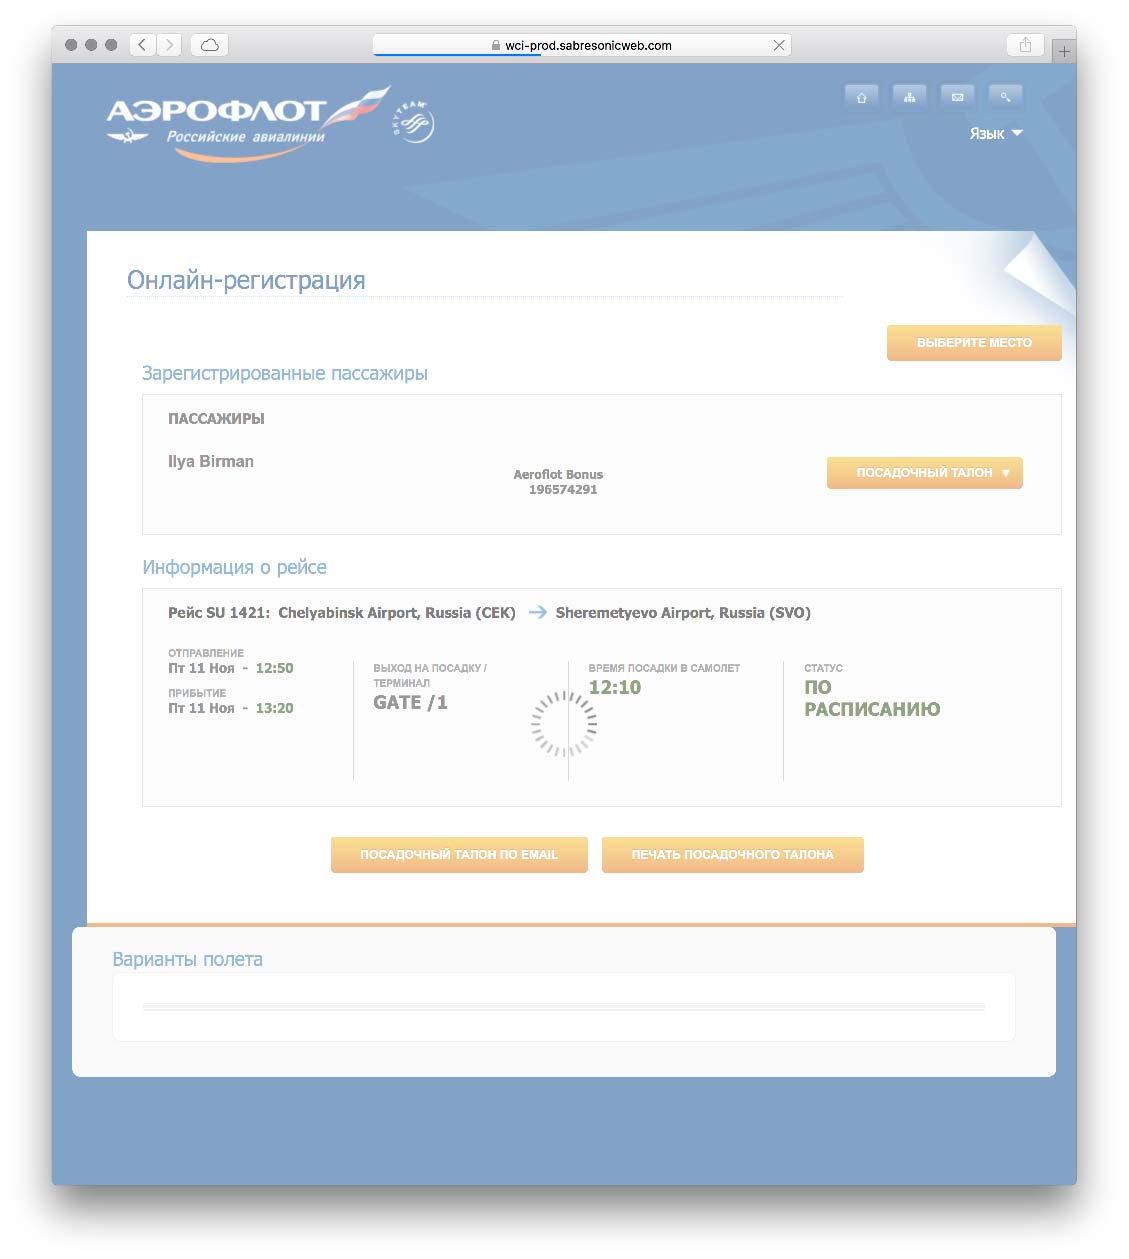 Инструкция по регистрации на рейс аэрофлота: онлайн, в аэропорту